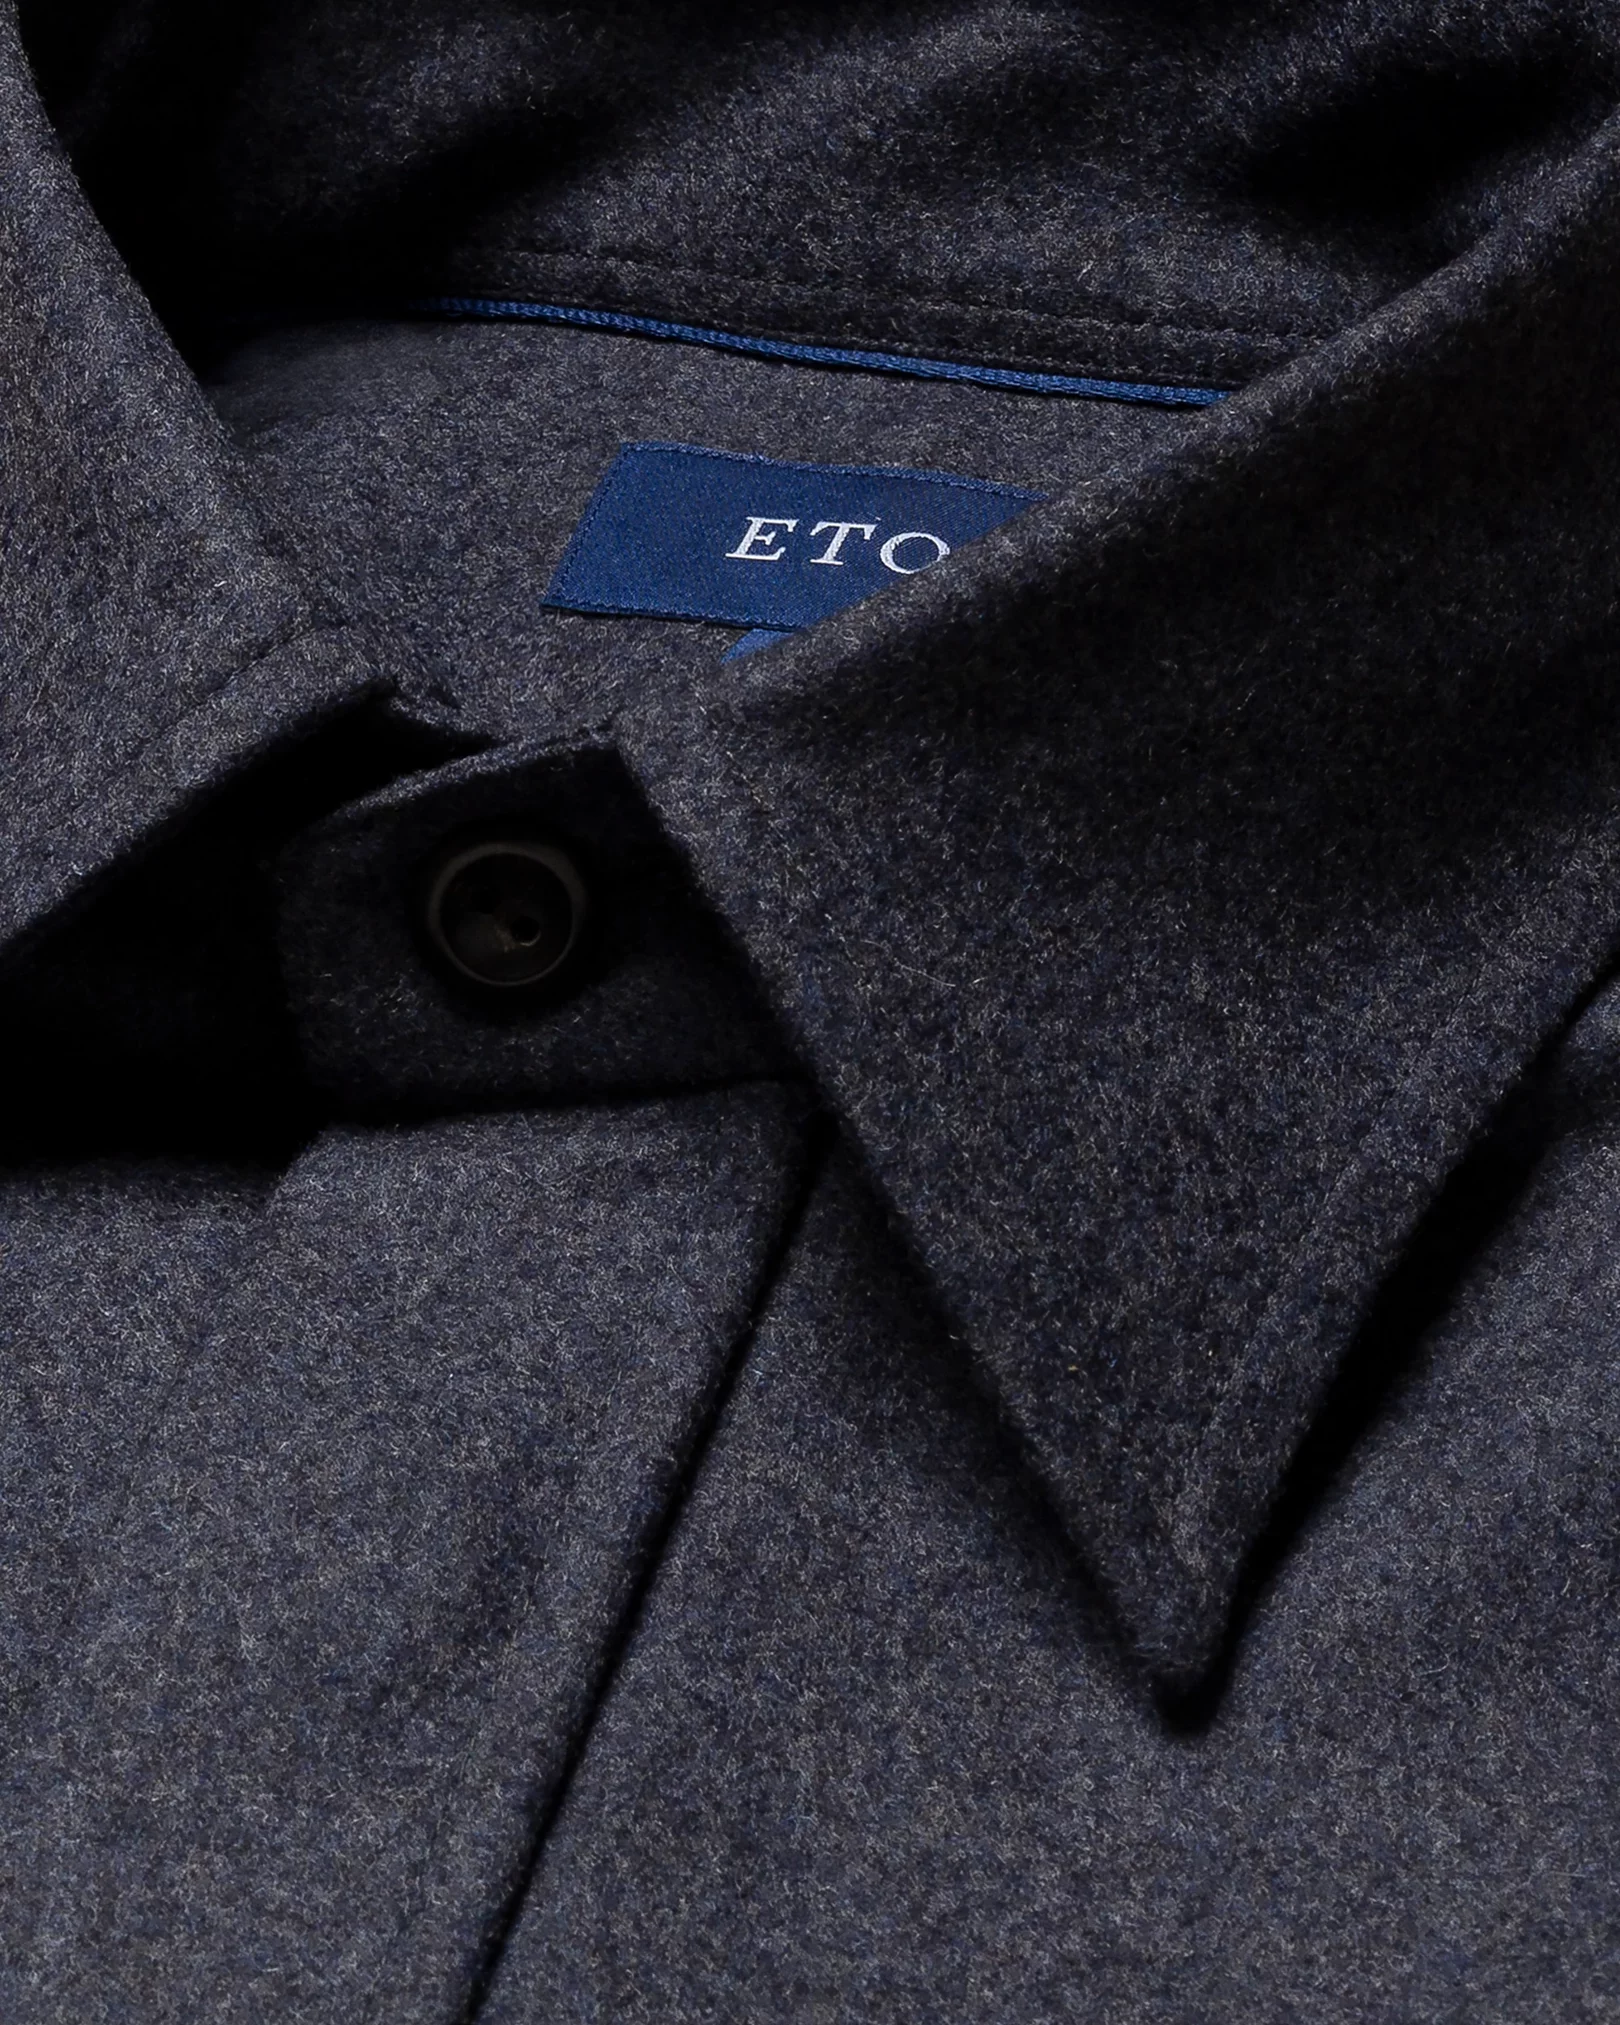 Eton - navy blue twill wool cashmere